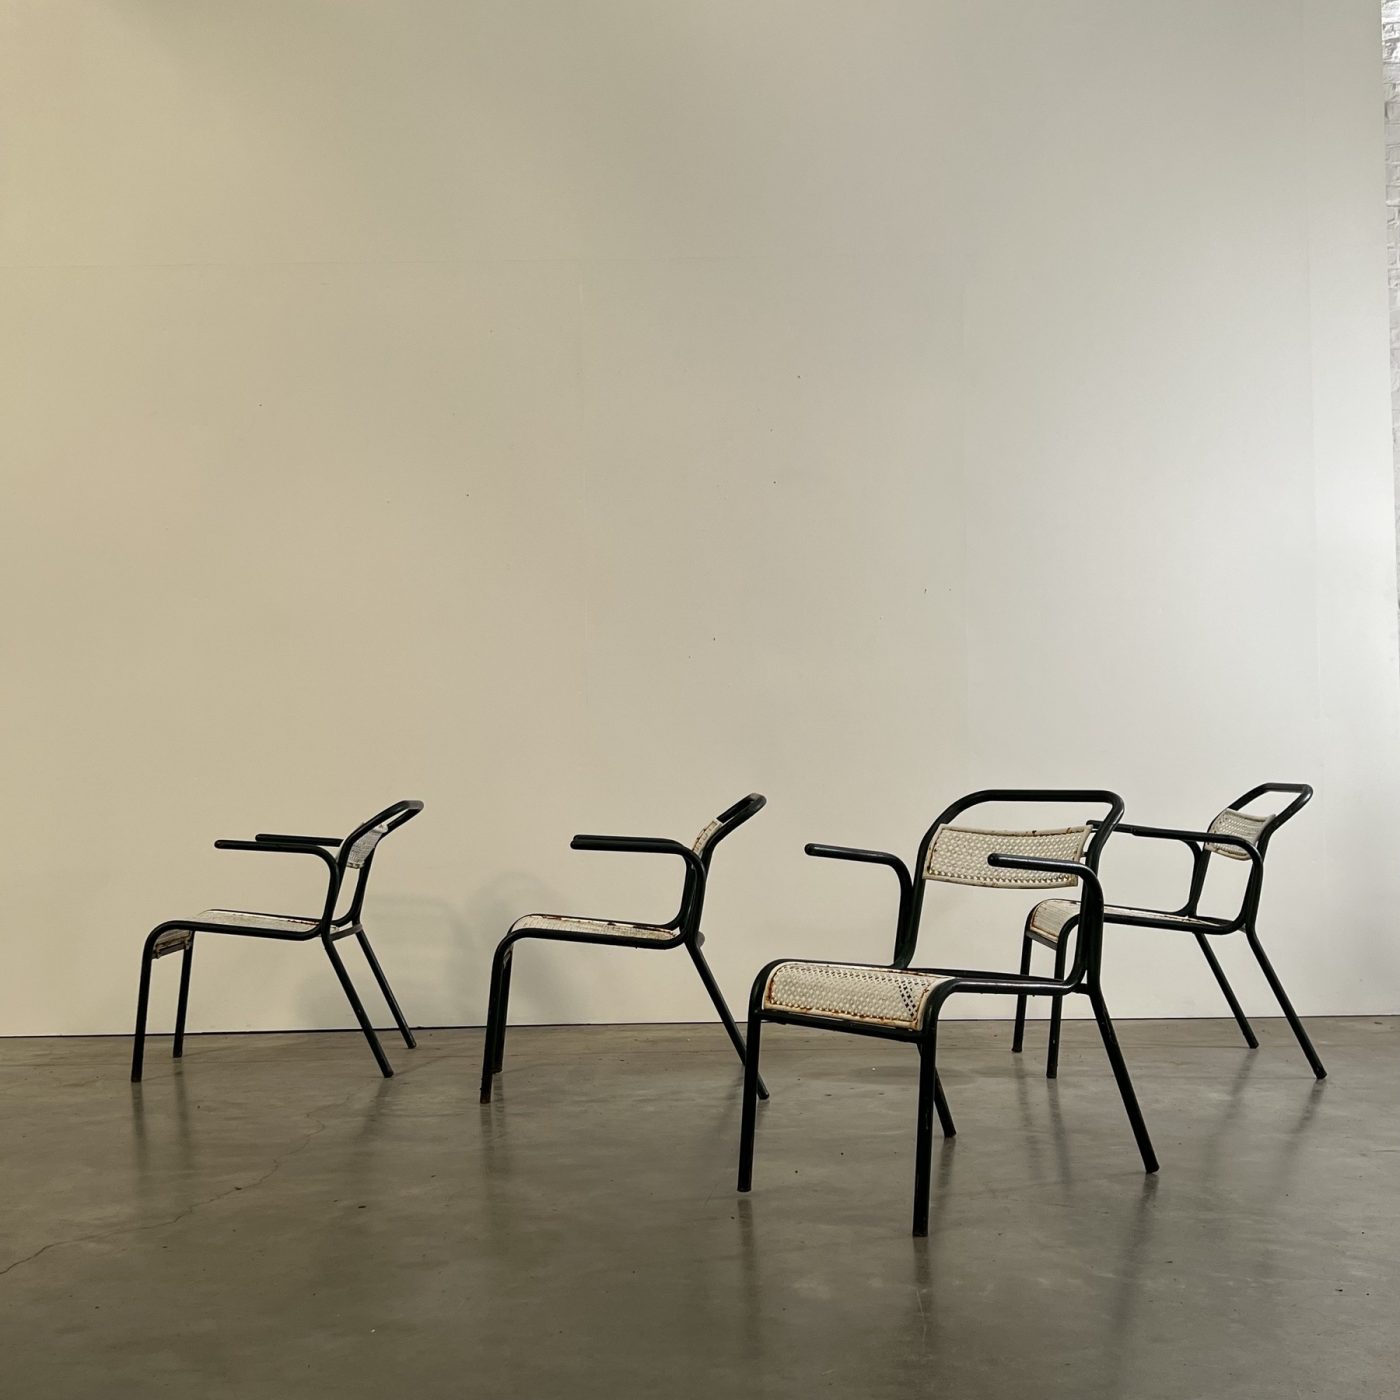 objet-vagabond-garden-chairs0005